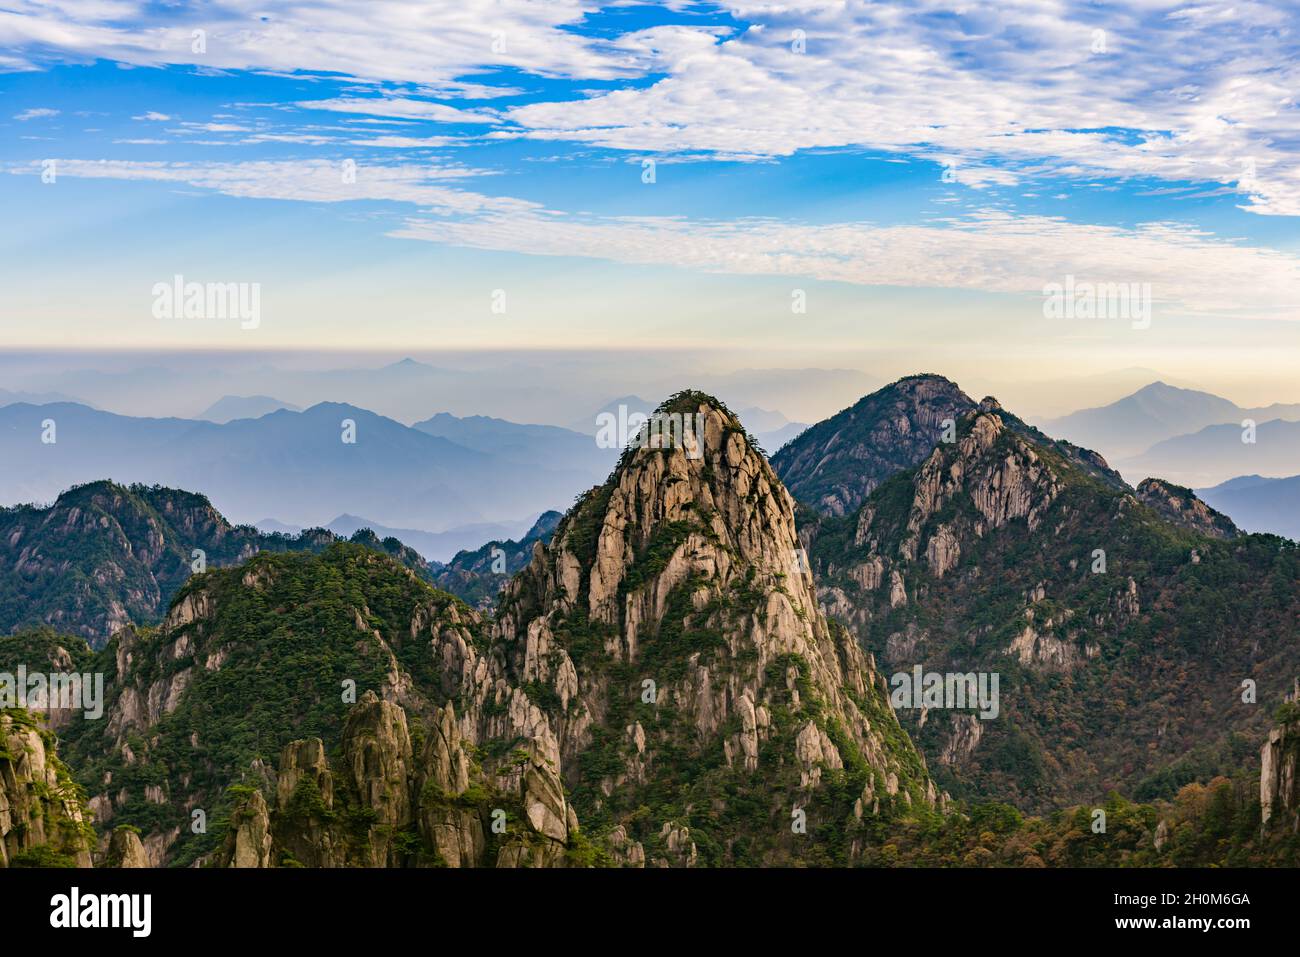 Morning view of mountain range, peak of Mount Huangshan, Anhui, China Stock Photo